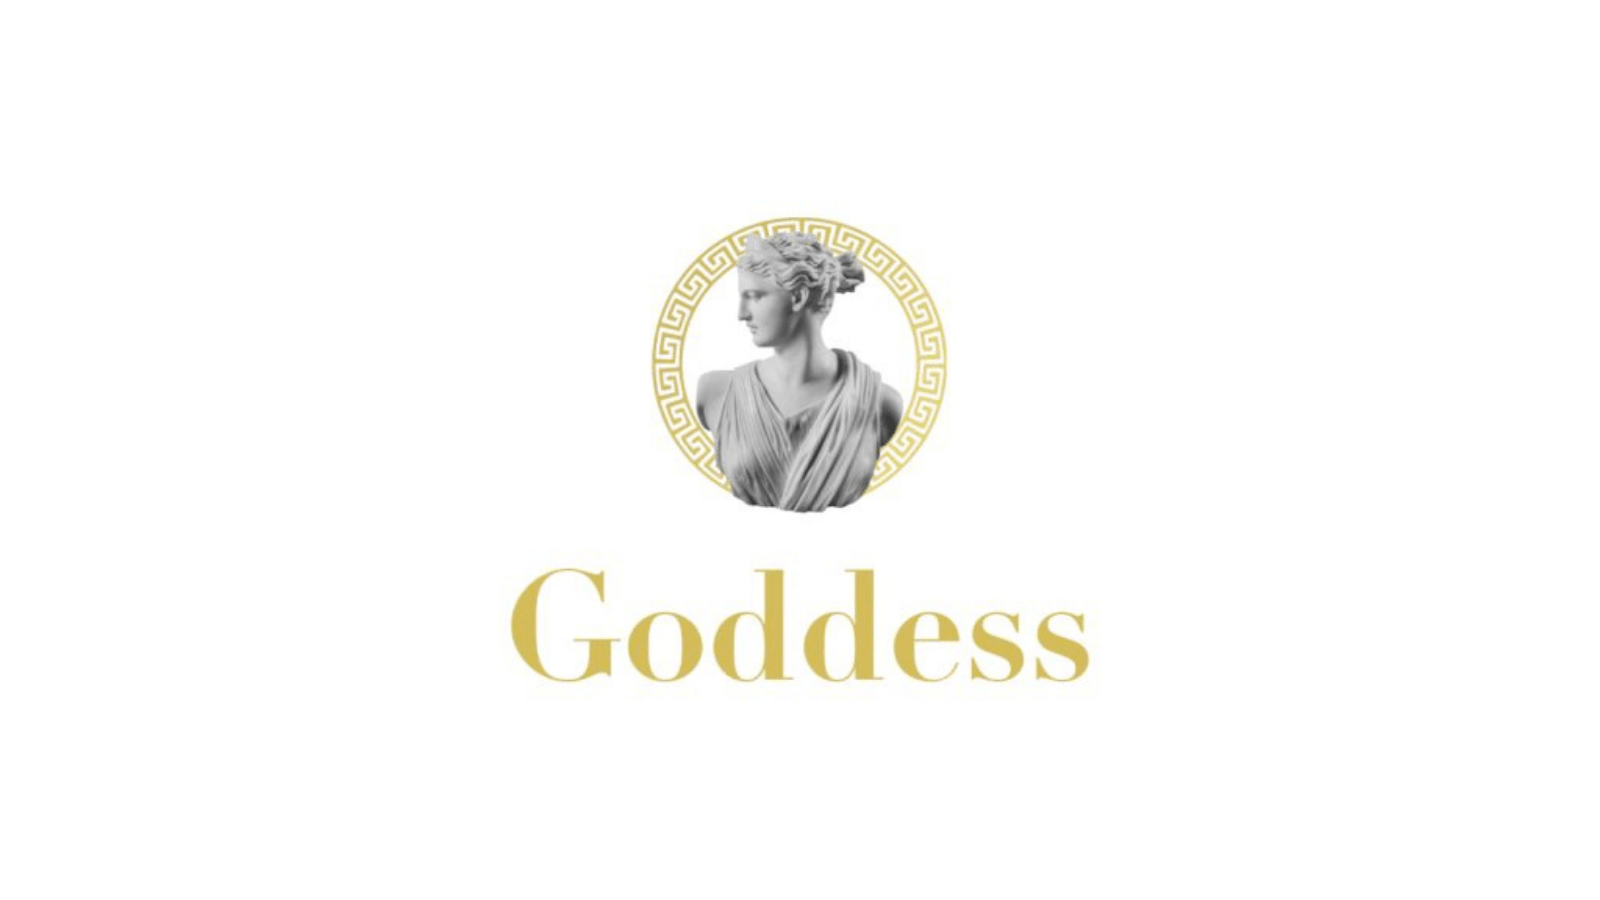 Yerli girişim Goddess, 2 milyon dolar değerleme üzerinden yatırım aldı.